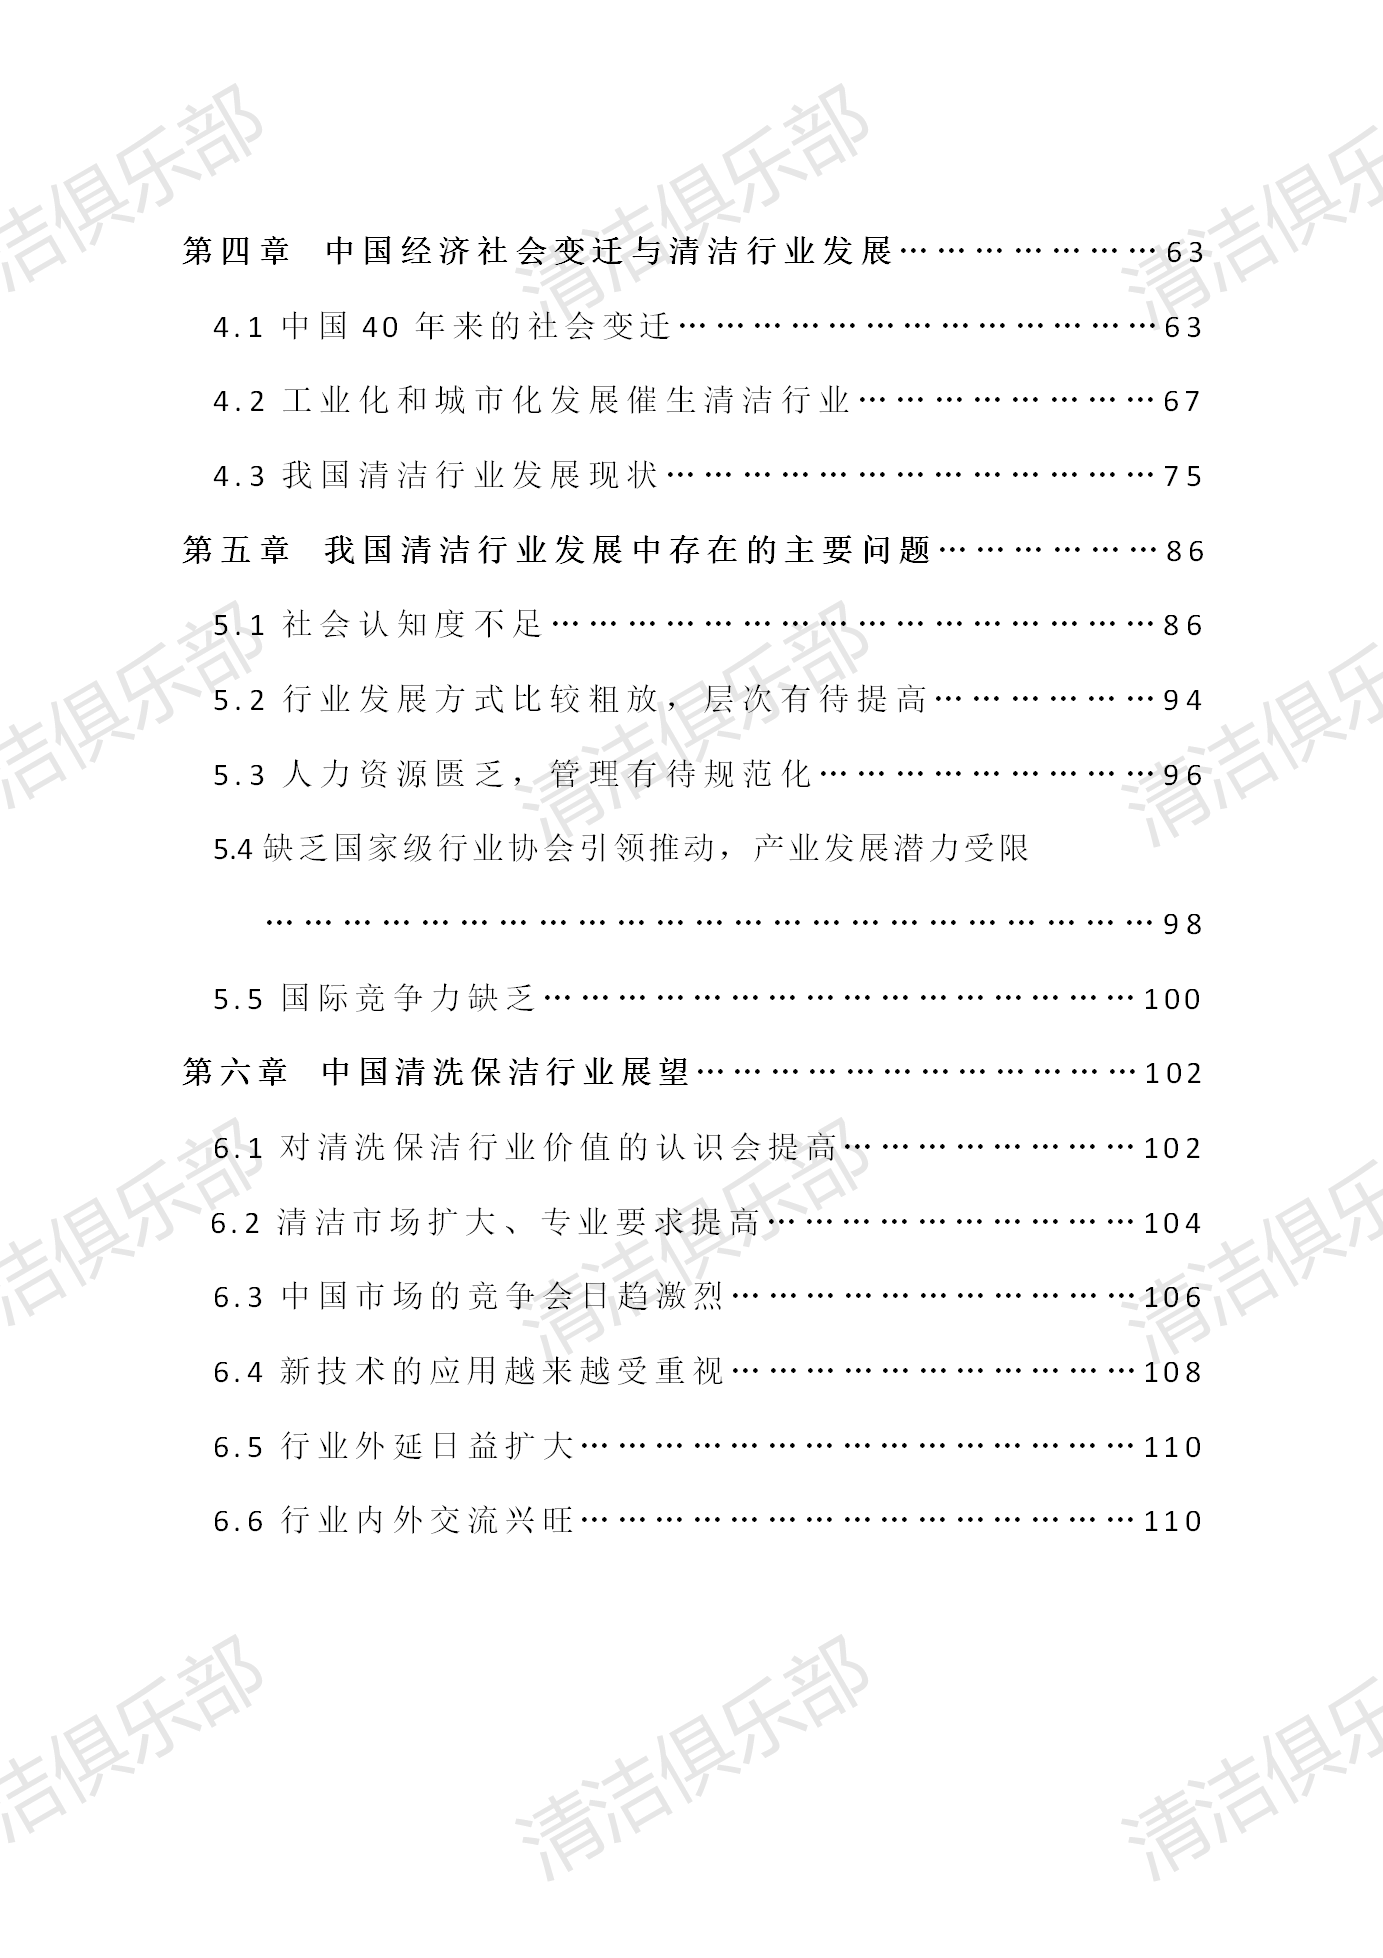 中国清洗保洁行业调研报告排版_09.png